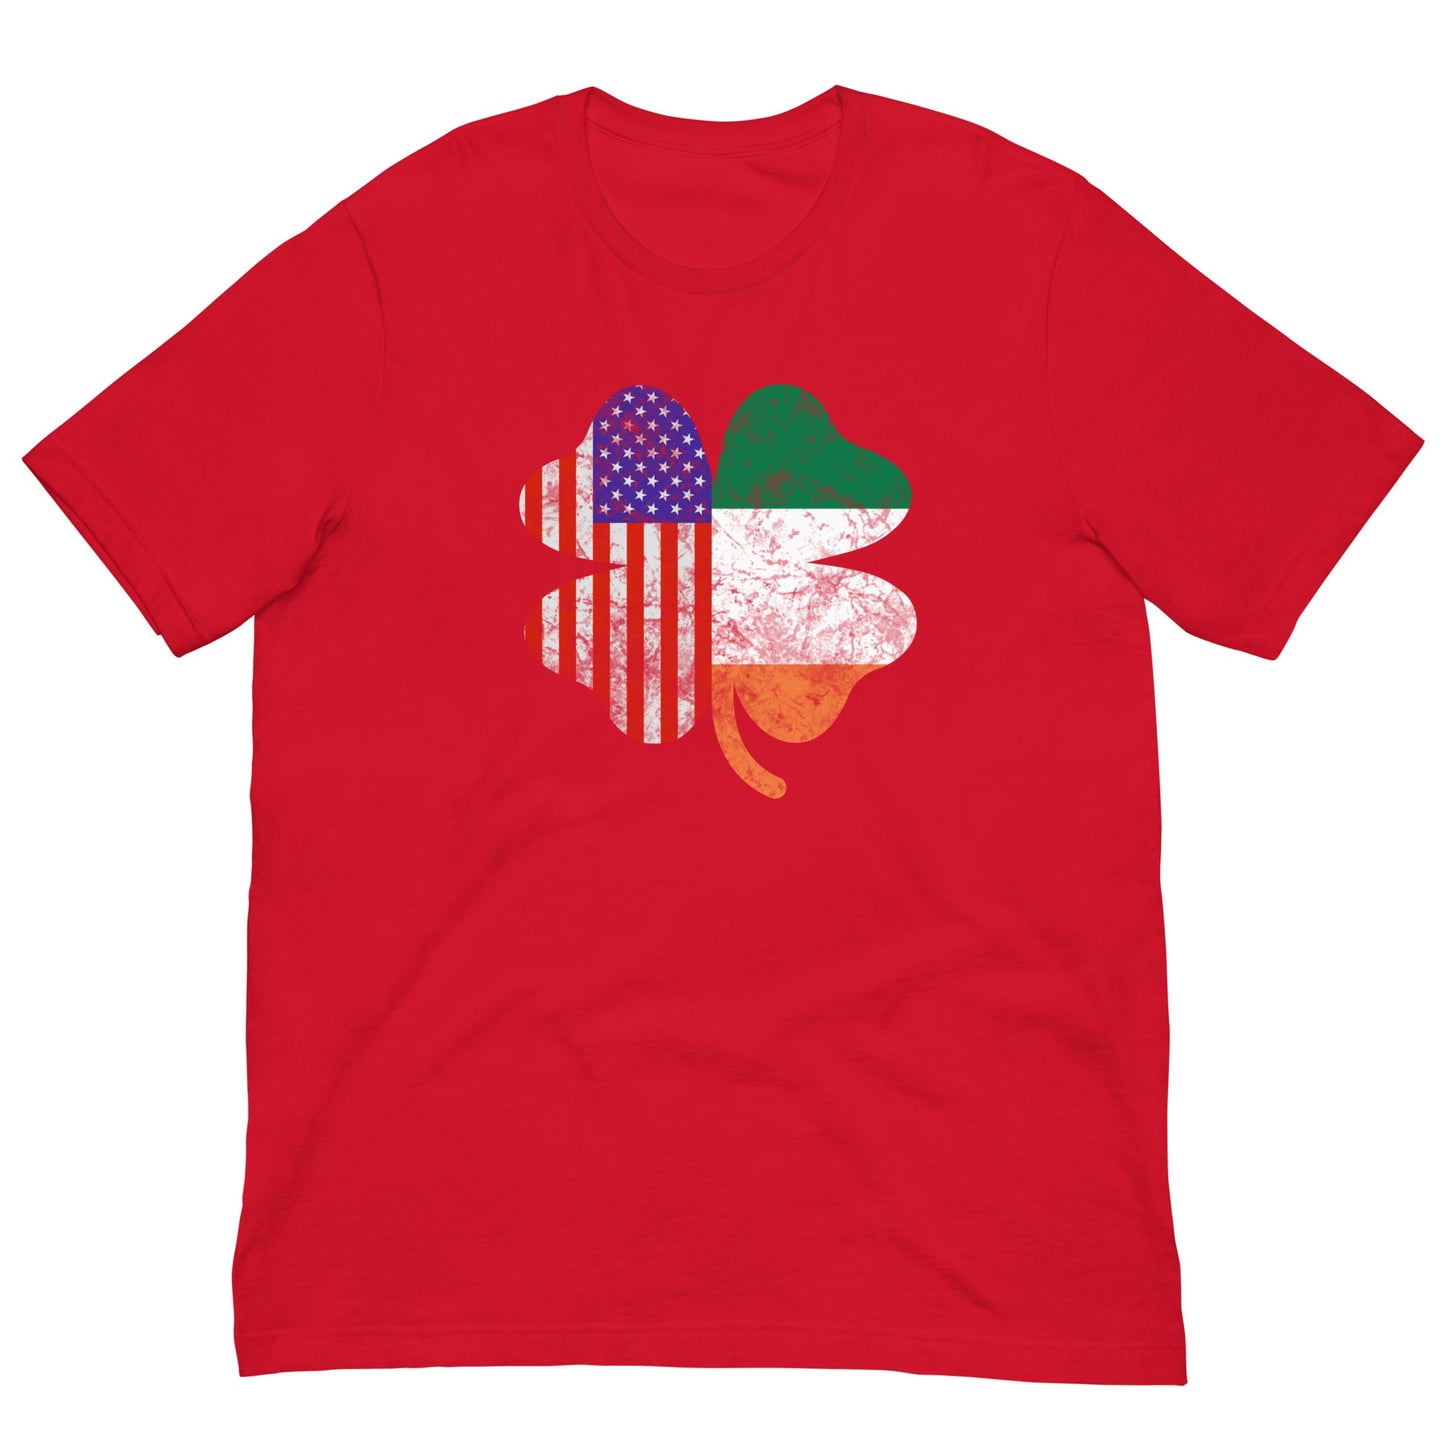 Irish American Flag T-shirt Red / XS